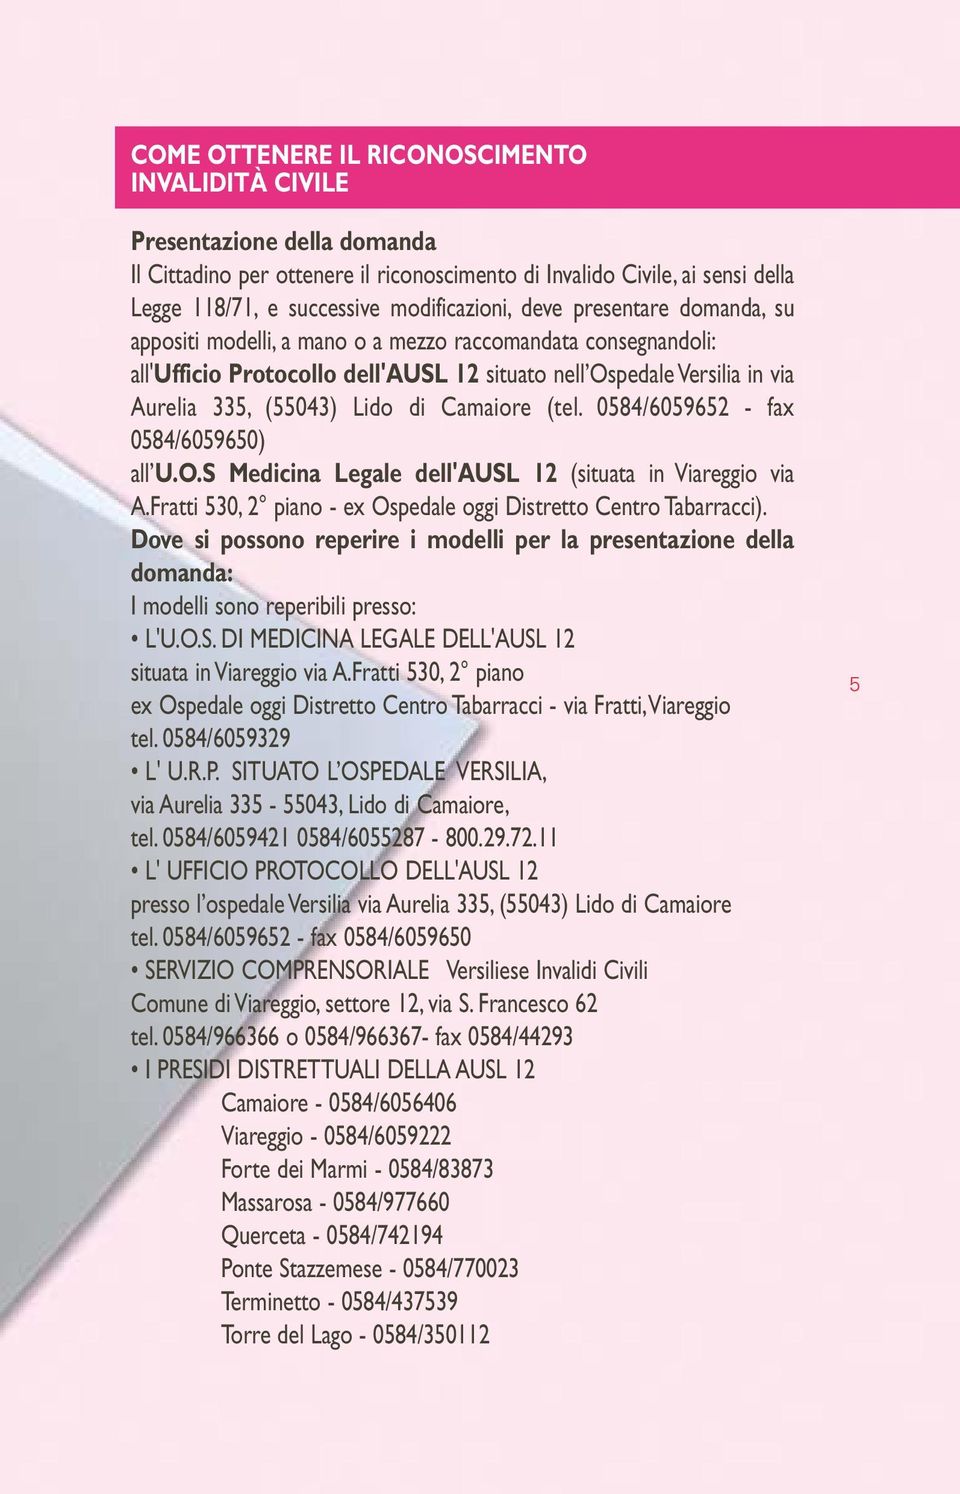 Camaiore (tel. 0584/6059652 - fax 0584/6059650) all U.O.S Medicina Legale dell'ausl 12 (situata in Viareggio via A.Fratti 530, 2 piano - ex Ospedale oggi Distretto Centro Tabarracci).